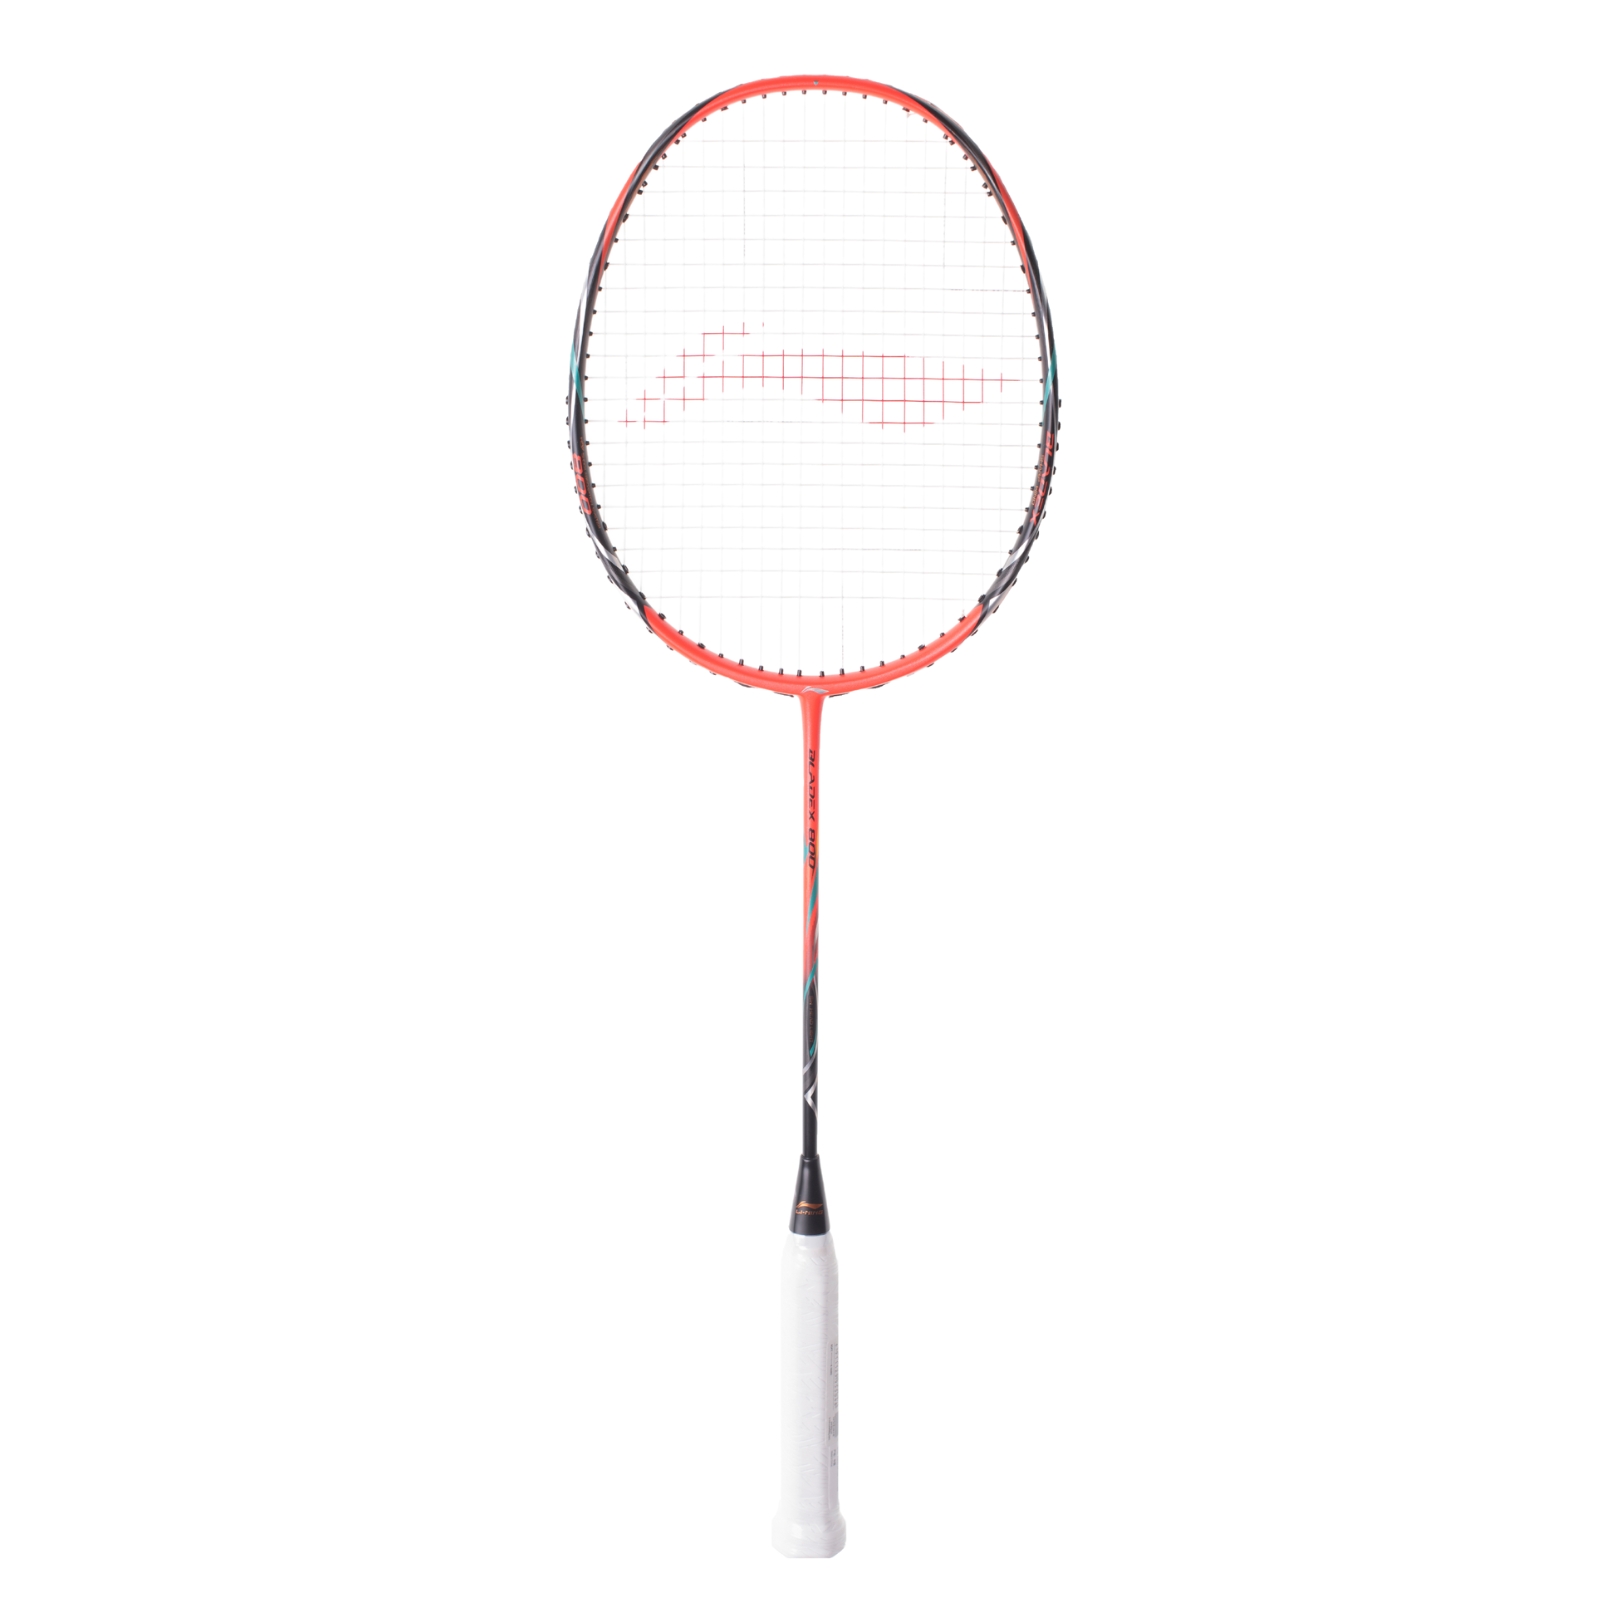 Li-Ning BladeX 800 Badminton racket → Get it here!